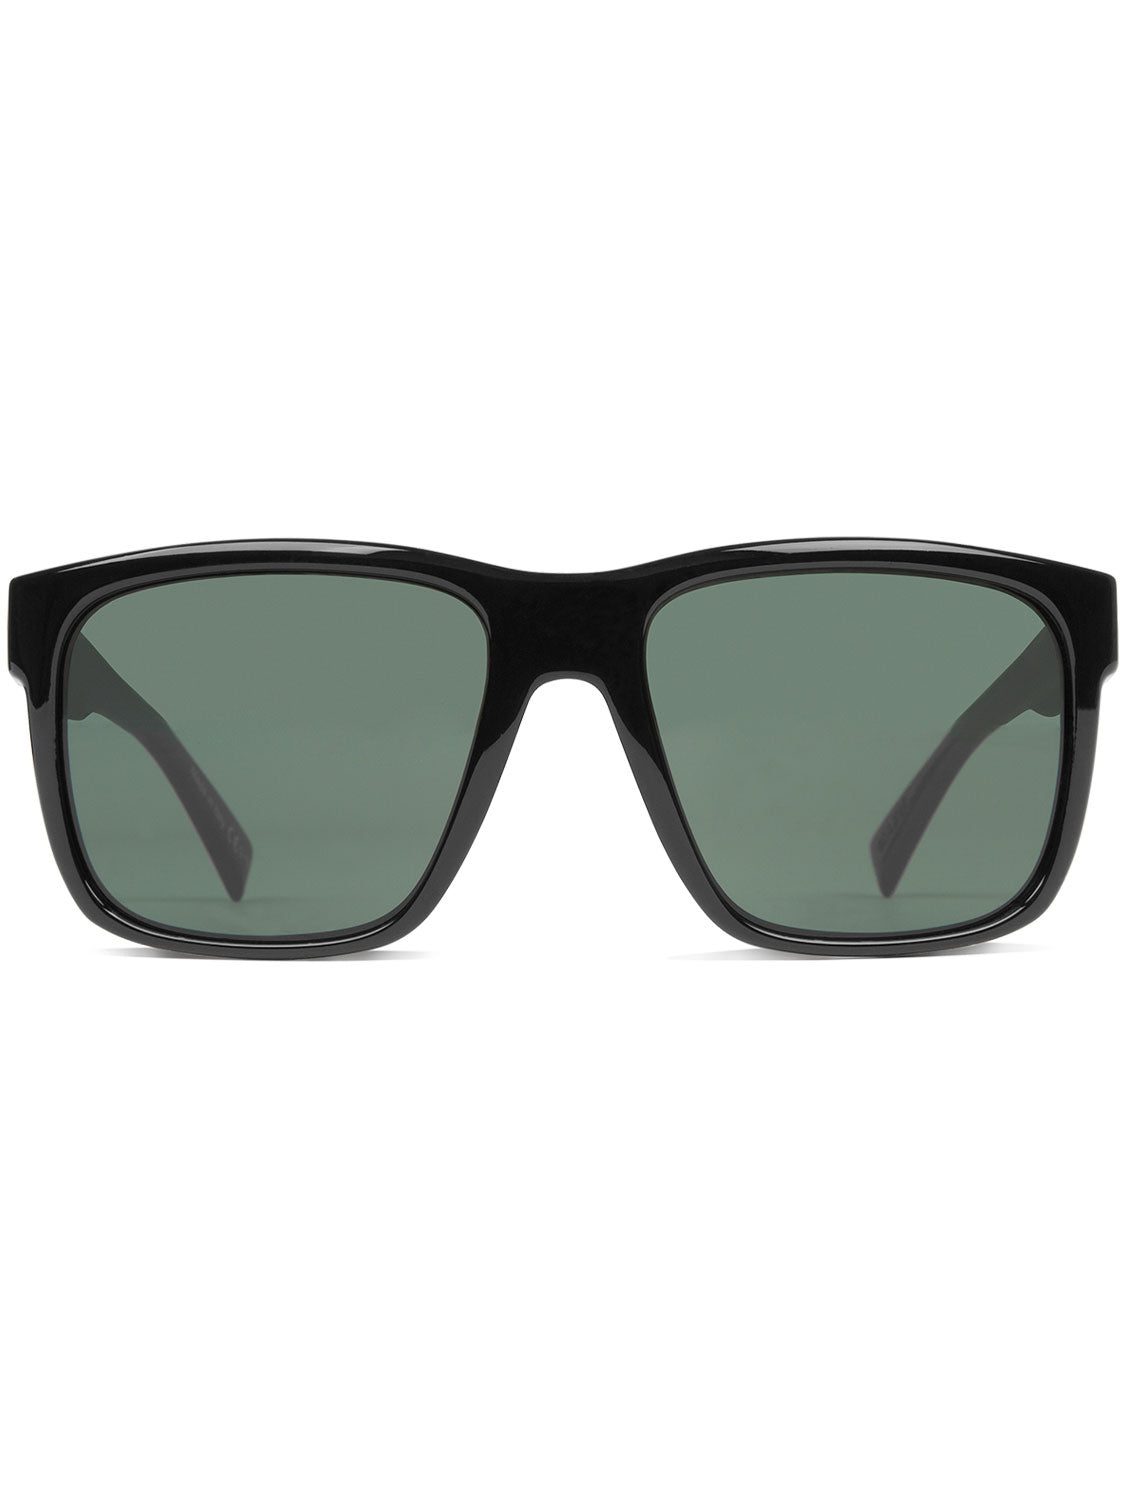 VonZipper Unisex Maxis Sunglasses